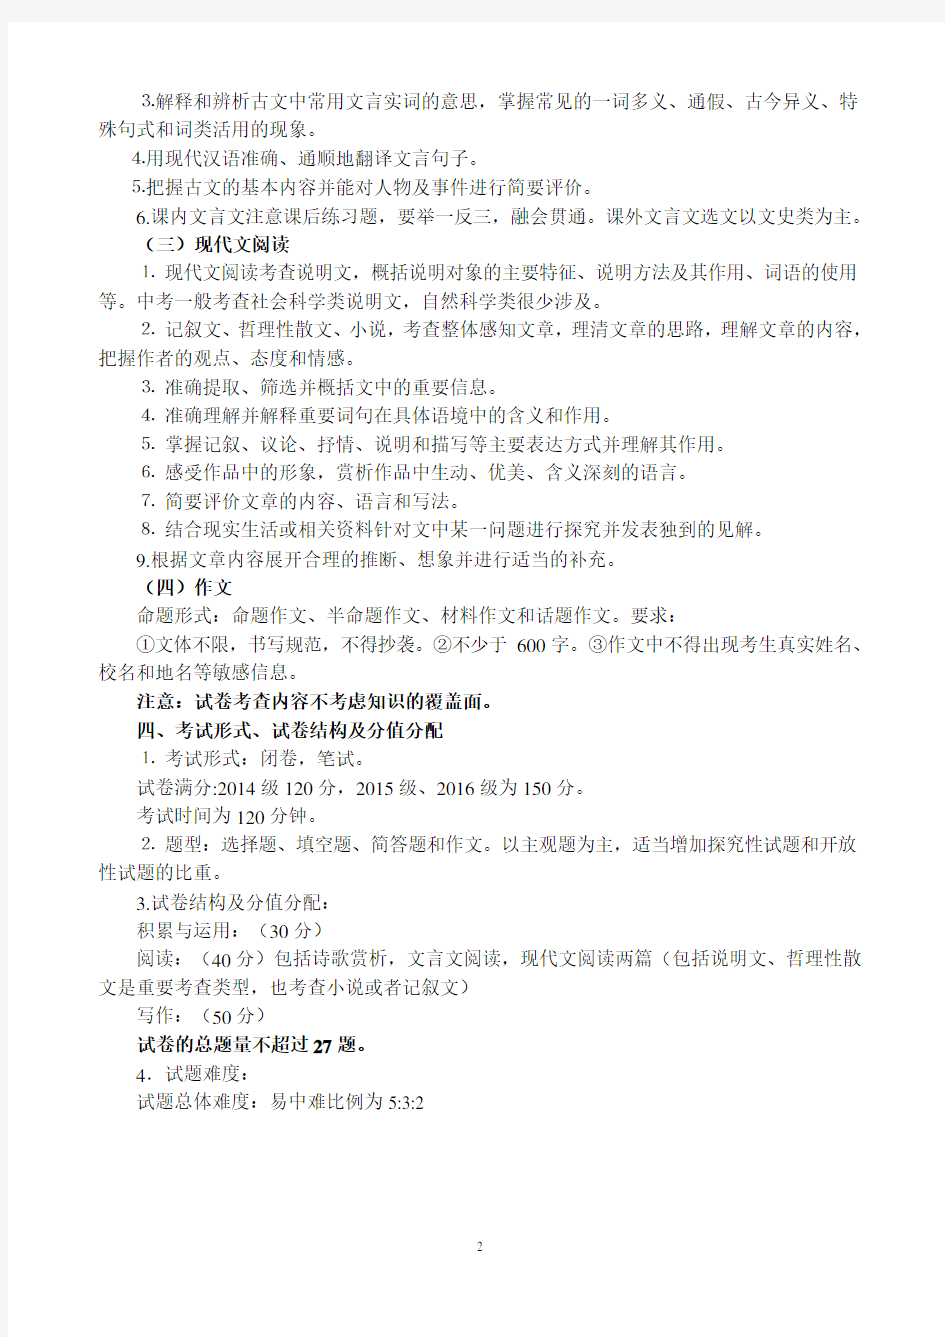 初中语文试题命制的要求 细节